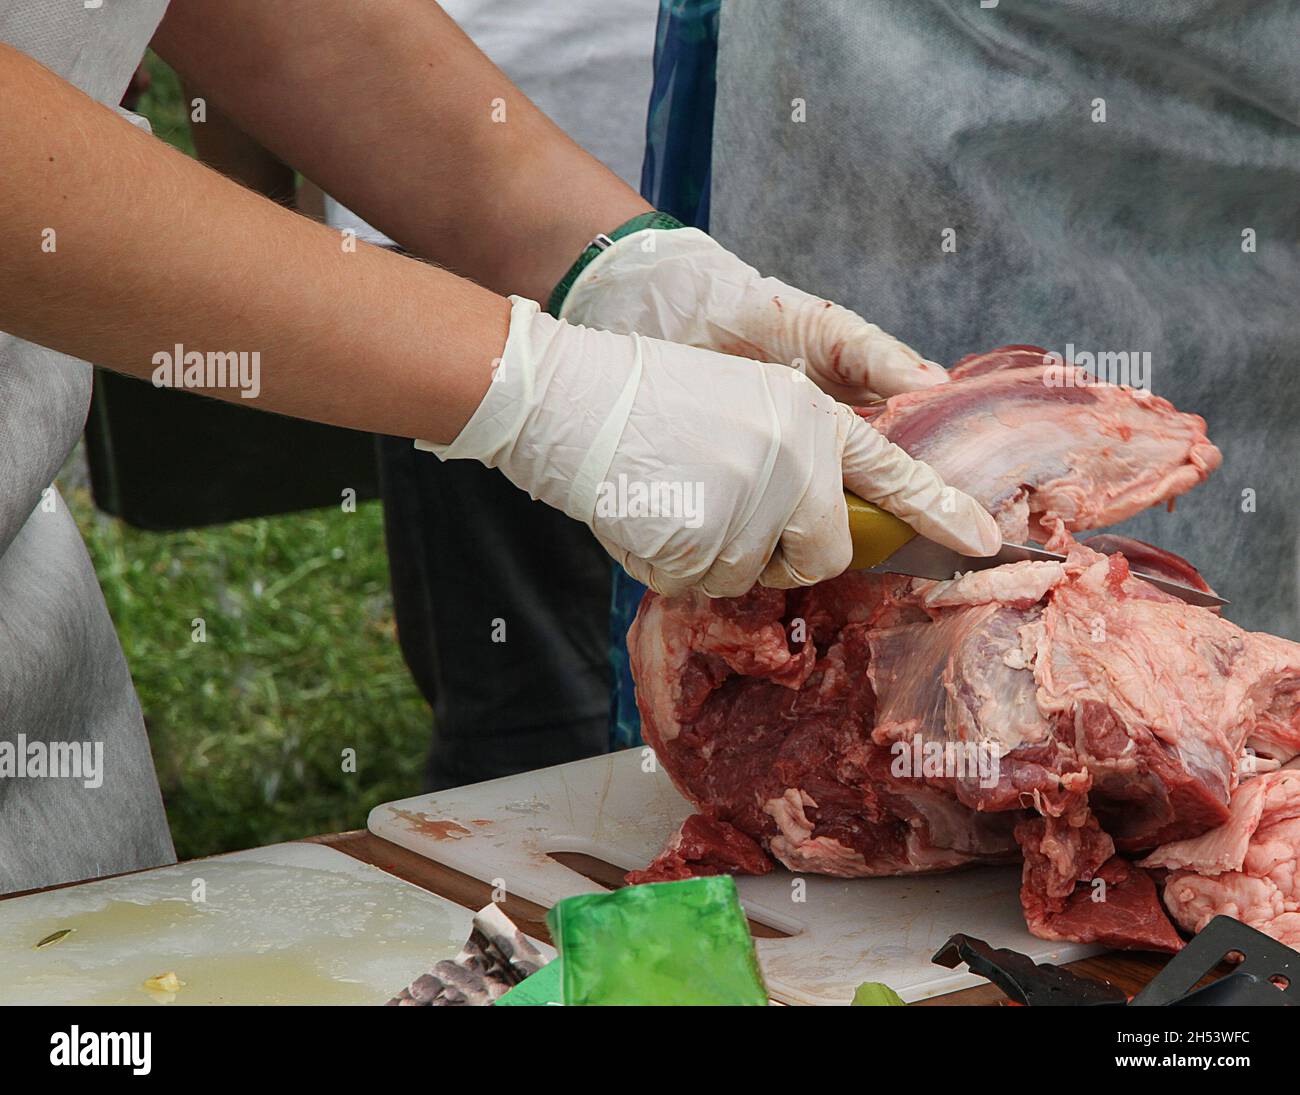 le mani degli uomini in guanti tagliano la carne fresca per strada. cuoci il kebab. Foto Stock